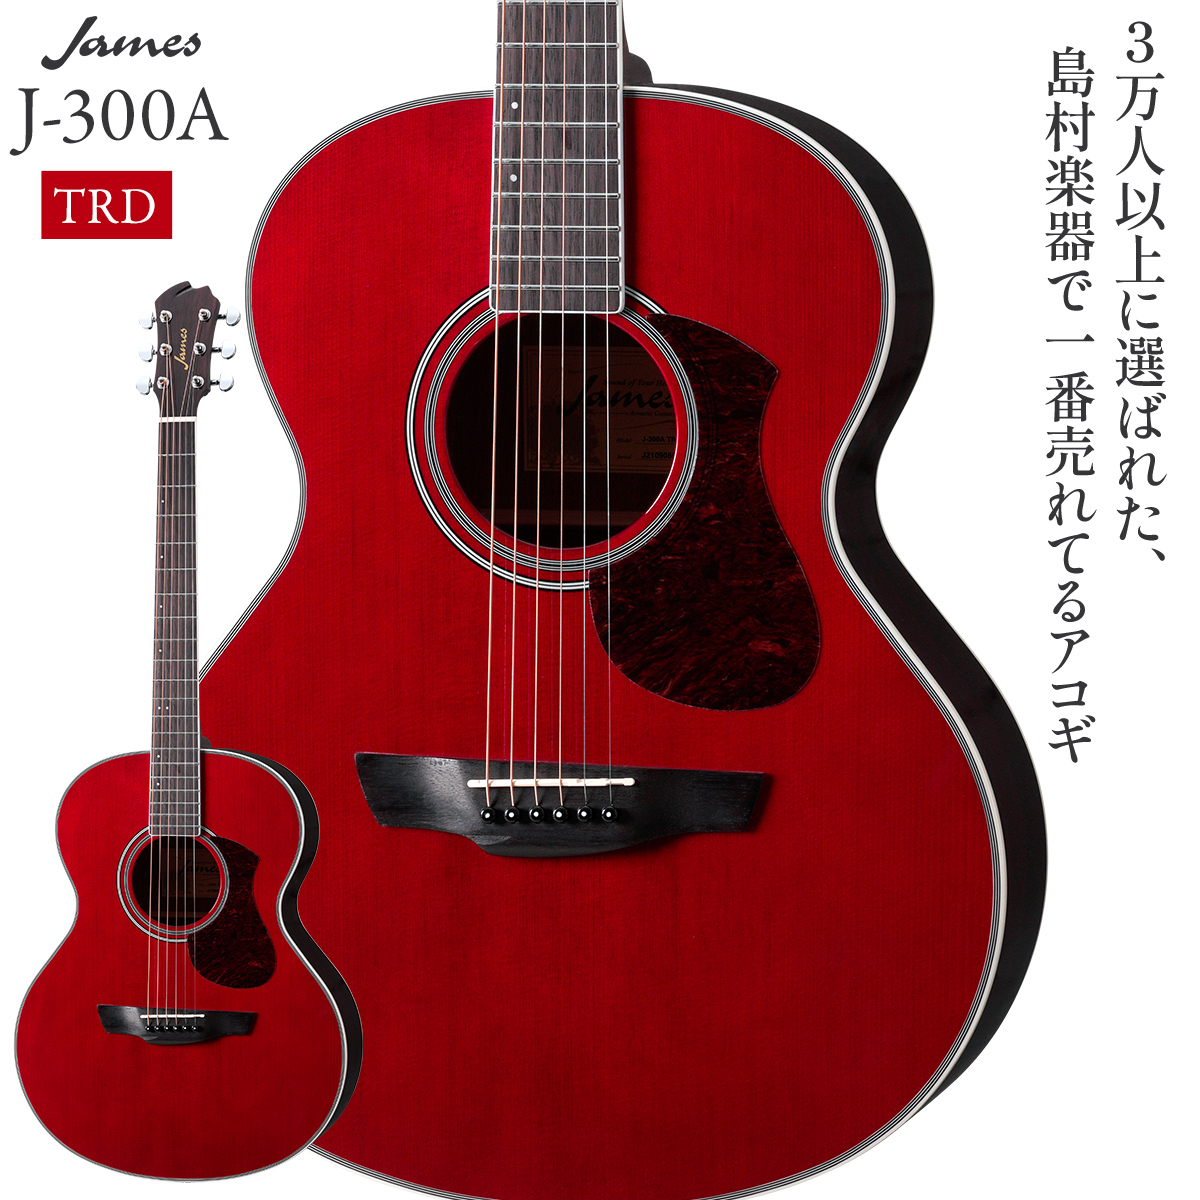 James J-300A TRD (トランスレッド) アコースティックギター ジェームス 【 ららぽーと富士見店 】